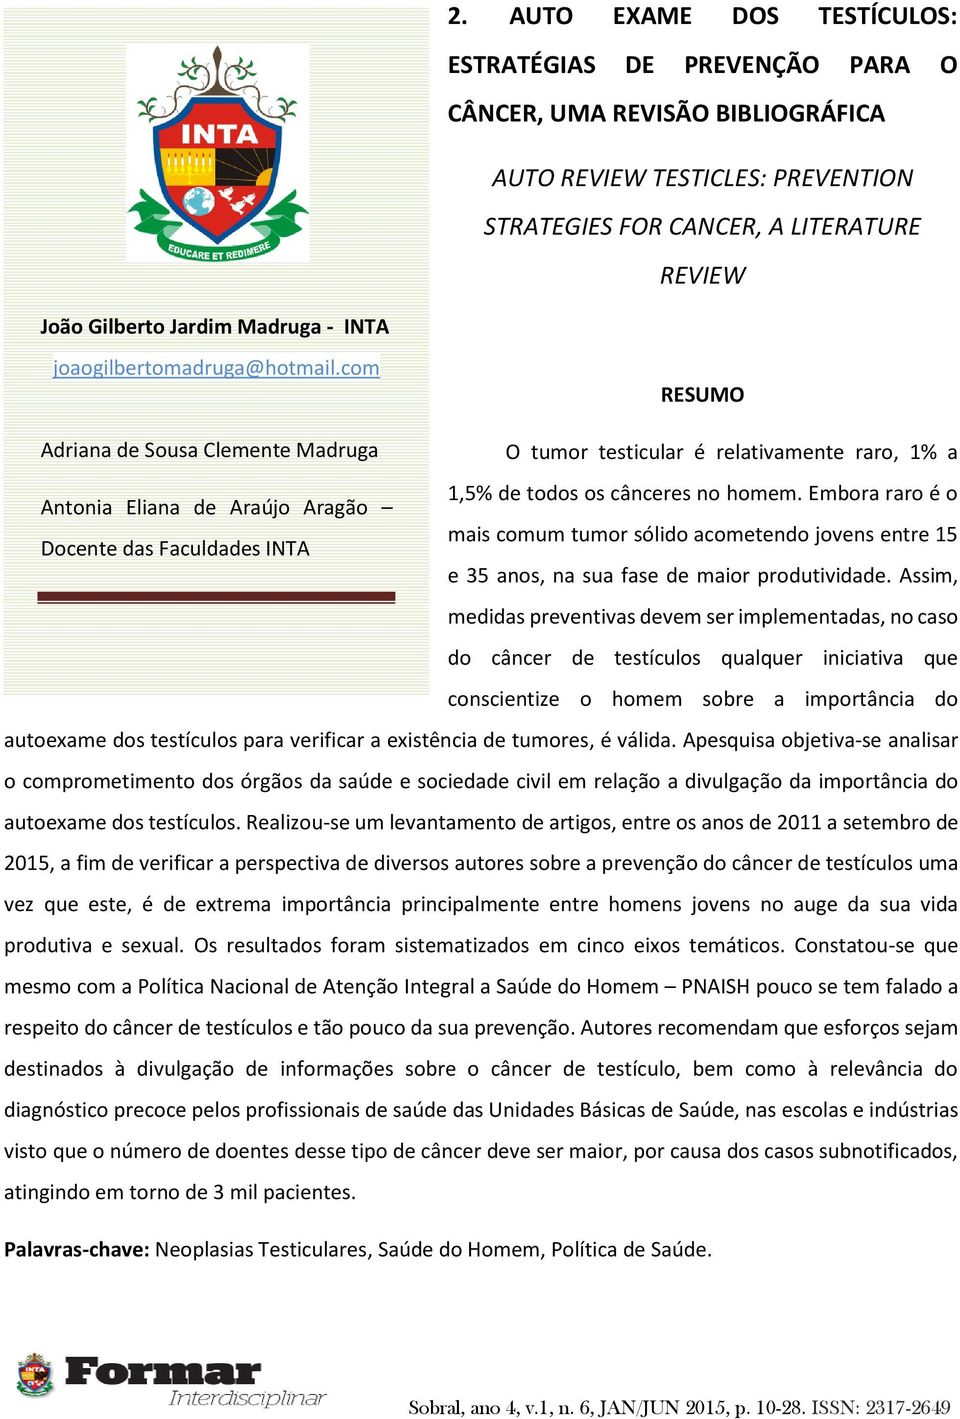 Embora raro é o Antonia Eliana de Araújo Aragão mais comum tumor sólido acometendo jovens entre 15 Docente das Faculdades INTA e 35 anos, na sua fase de maior produtividade.